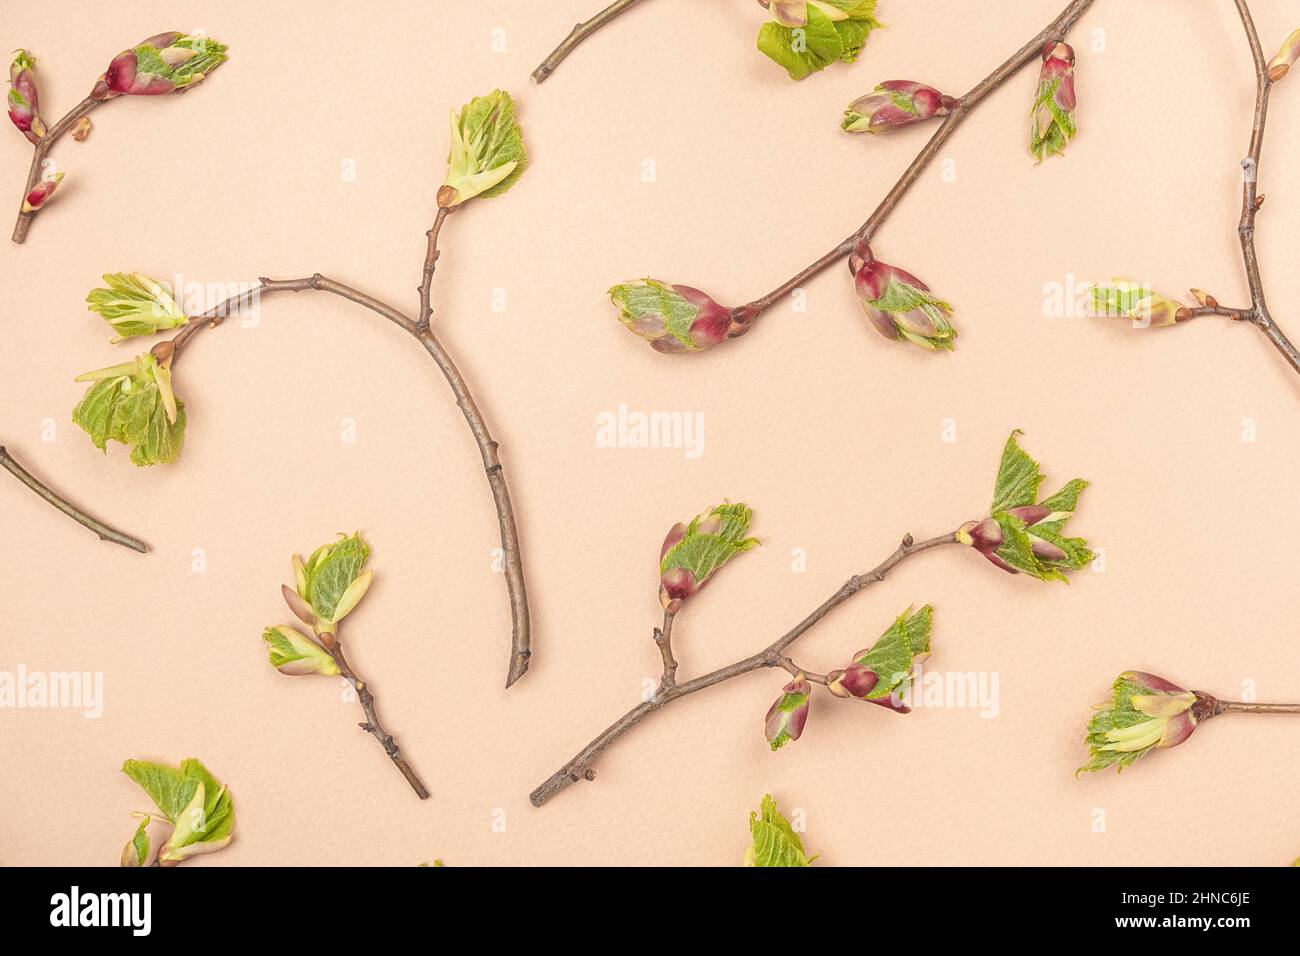 Branches avec bourgeons d'arbre de printemps et jeunes feuilles sur fond beige.Papier peint printanier, texture printanière.Vue de dessus Flat lay. Banque D'Images